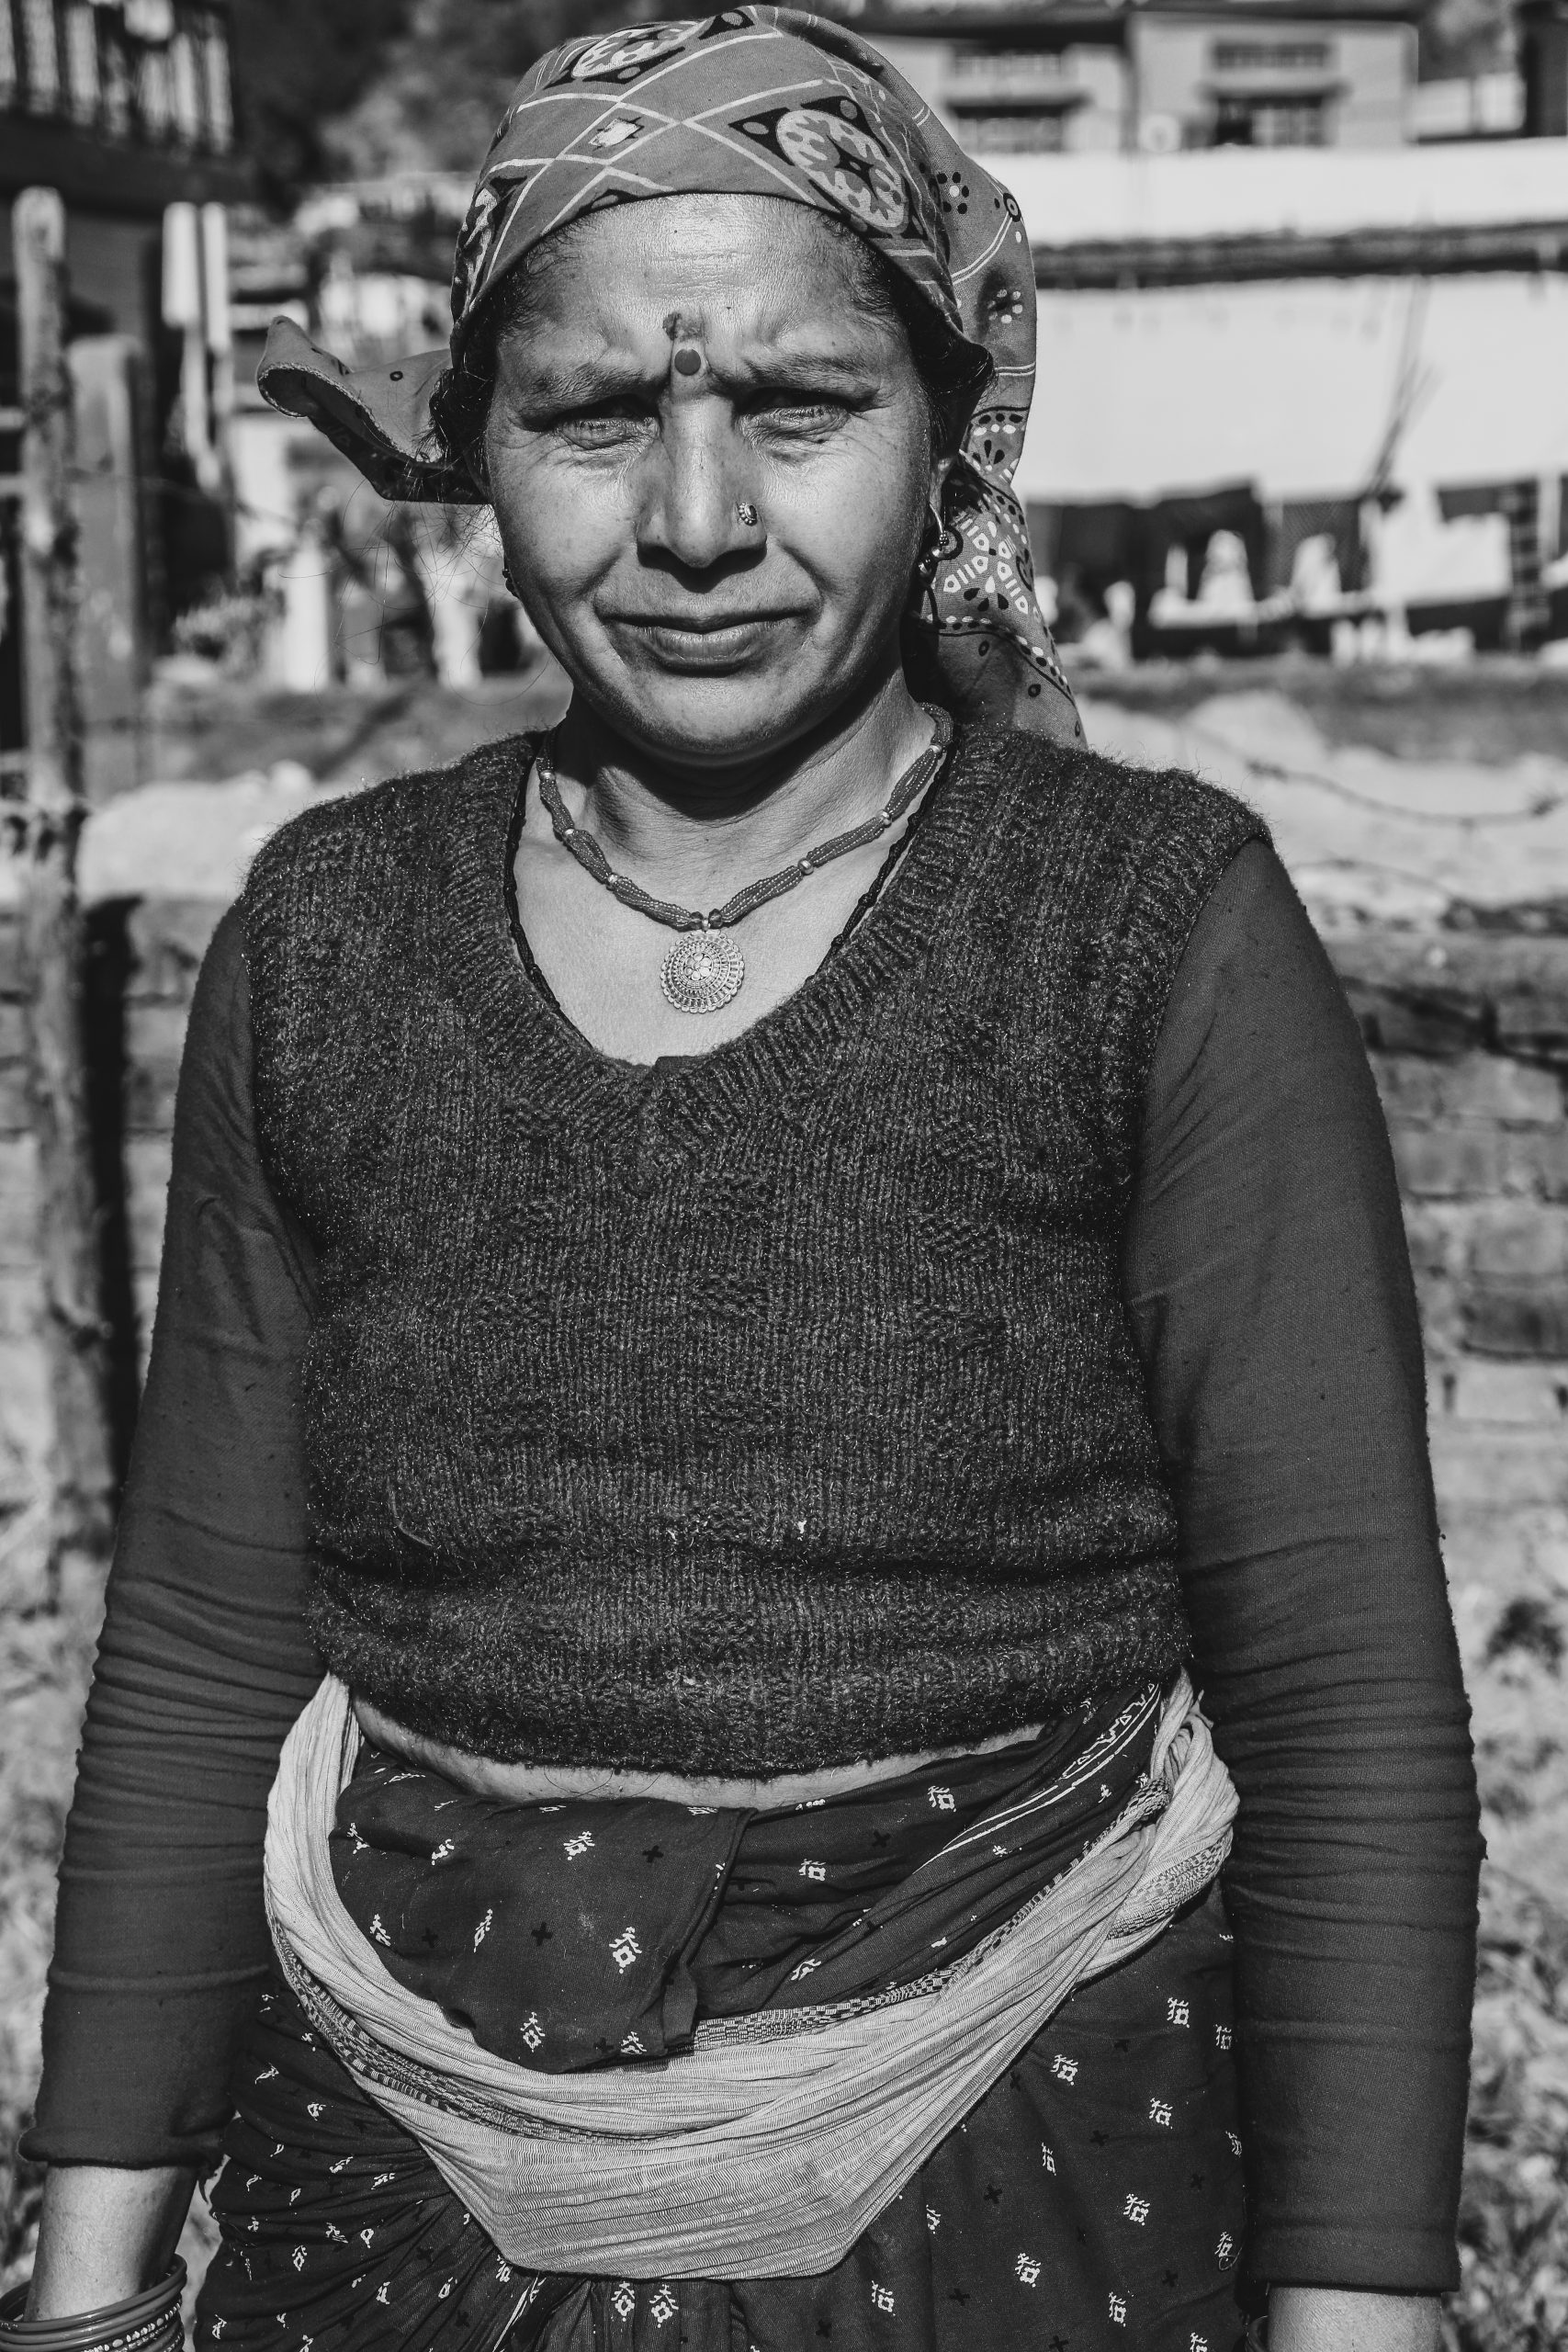 A village woman